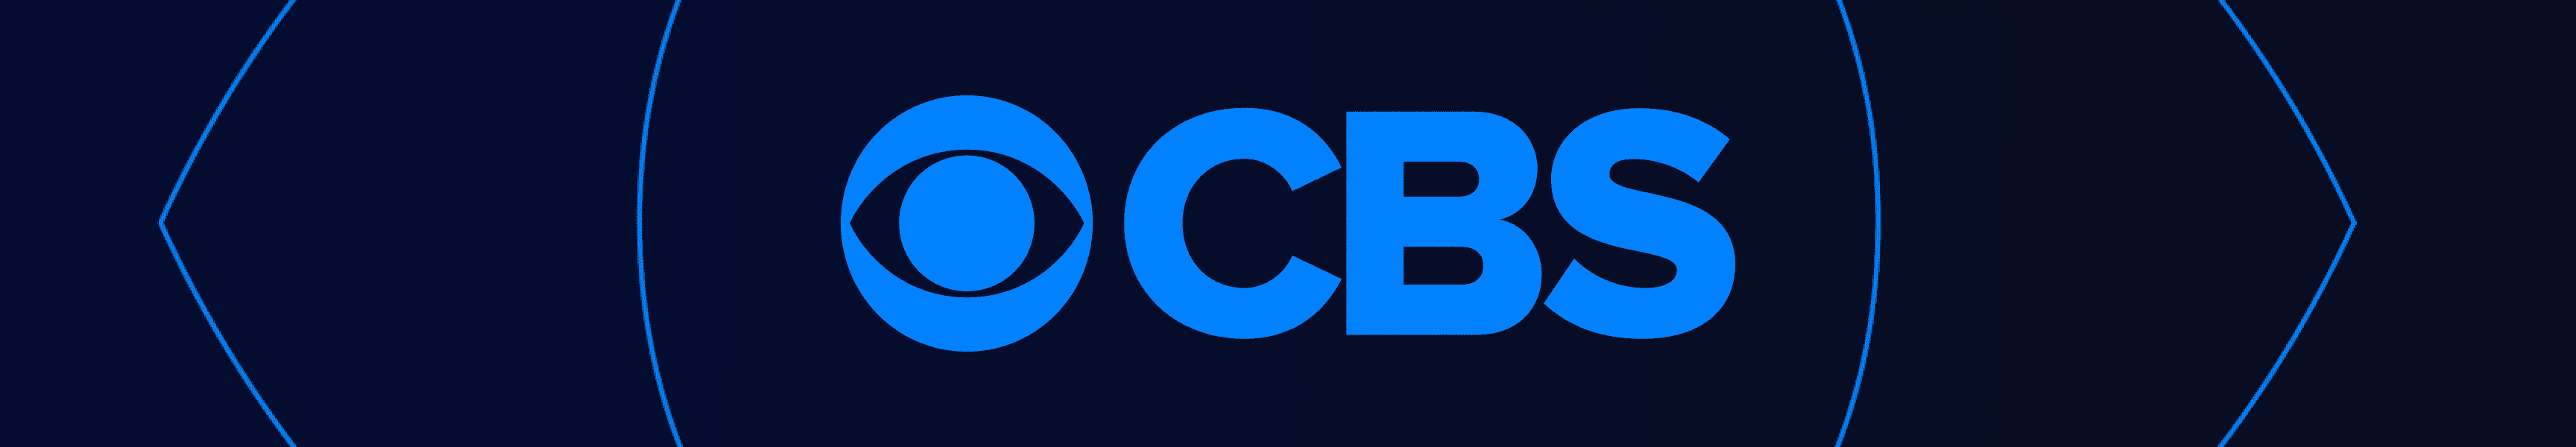 CBS Unterhaltung im Freien